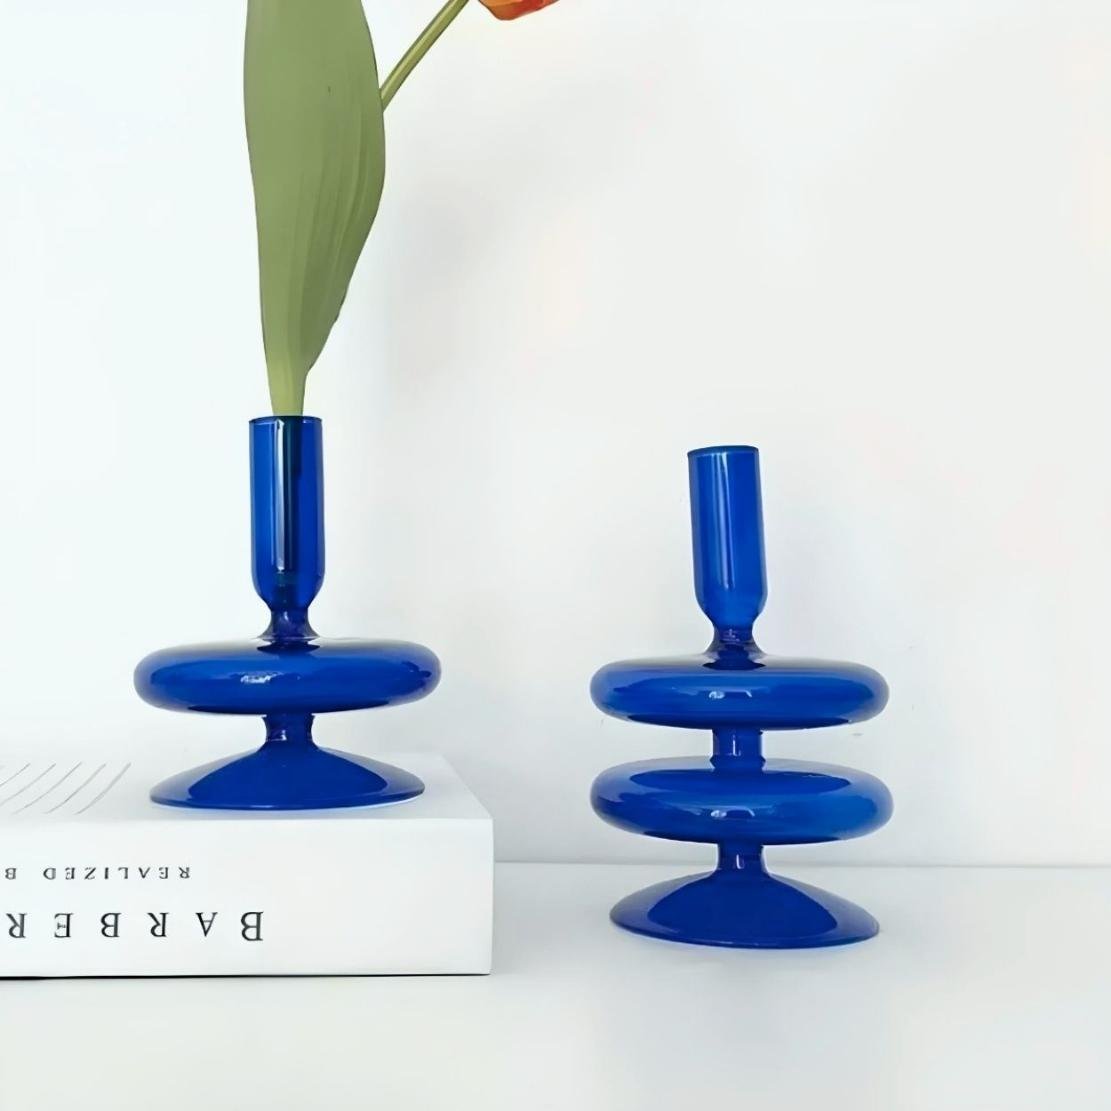 Blue, glass layered saucer candlestick holder